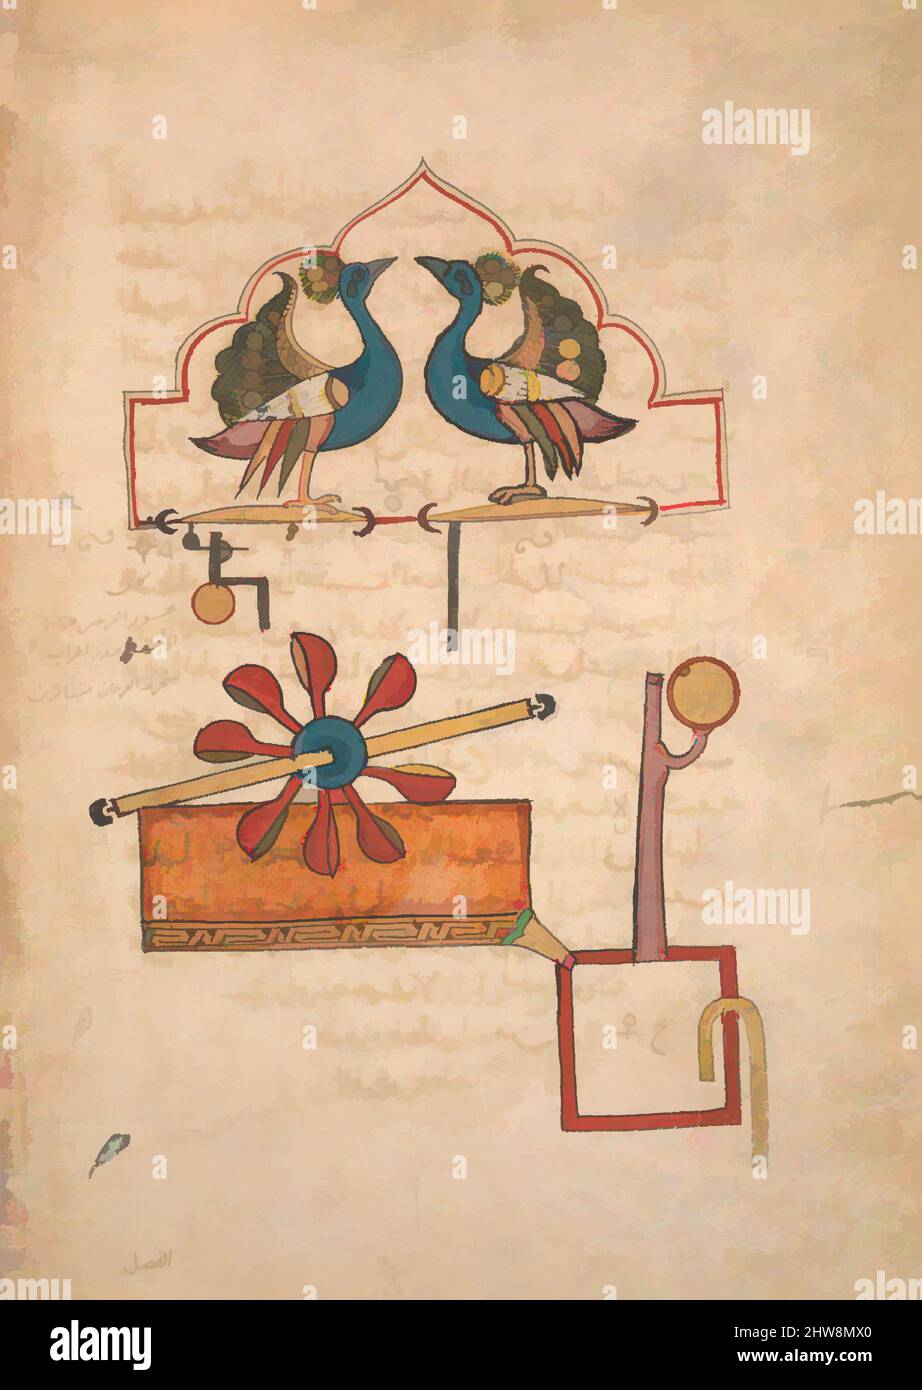 Art Inspired by Design for the Water Clock of the Peacocks', dal Kitab fi ma'rifat al-hiyal-handasiyya (Libro della conoscenza dei dispositivi meccanici ingegnosi) di Badi' al-Zaman b. al Razzaz al-Jazari, datato A.H. 715/A.D. 1315, attribuito a Siria o Iraq, inchiostro, acquerello opaco, opere classiche modernizzate da Artotop con un tuffo di modernità. Forme, colore e valore, impatto visivo accattivante sulle emozioni artistiche attraverso la libertà delle opere d'arte in modo contemporaneo. Un messaggio senza tempo che persegue una nuova direzione selvaggiamente creativa. Artisti che si rivolgono al supporto digitale e creano l'NFT Artotop Foto Stock